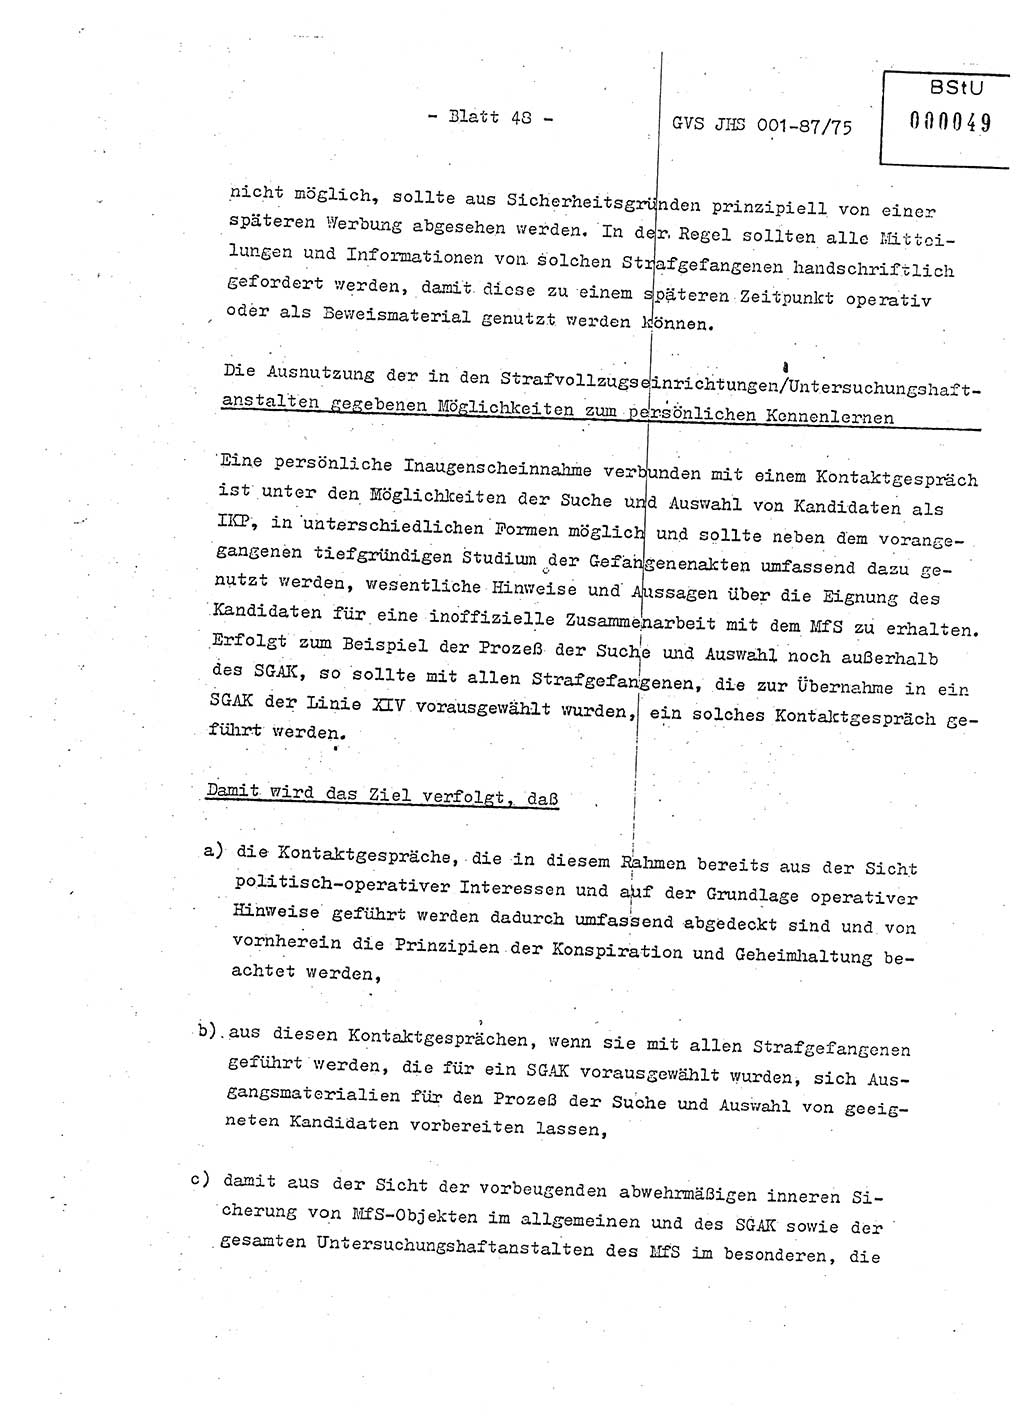 Diplomarbeit Hauptmann Volkmar Heinz (Abt. ⅩⅣ), Oberleutnant Lothar Rüdiger (BV Lpz. Abt. Ⅺ), Ministerium für Staatssicherheit (MfS) [Deutsche Demokratische Republik (DDR)], Juristische Hochschule (JHS), Geheime Verschlußsache (GVS) o001-87/75, Potsdam 1975, Seite 48 (Dipl.-Arb. MfS DDR JHS GVS o001-87/75 1975, S. 48)